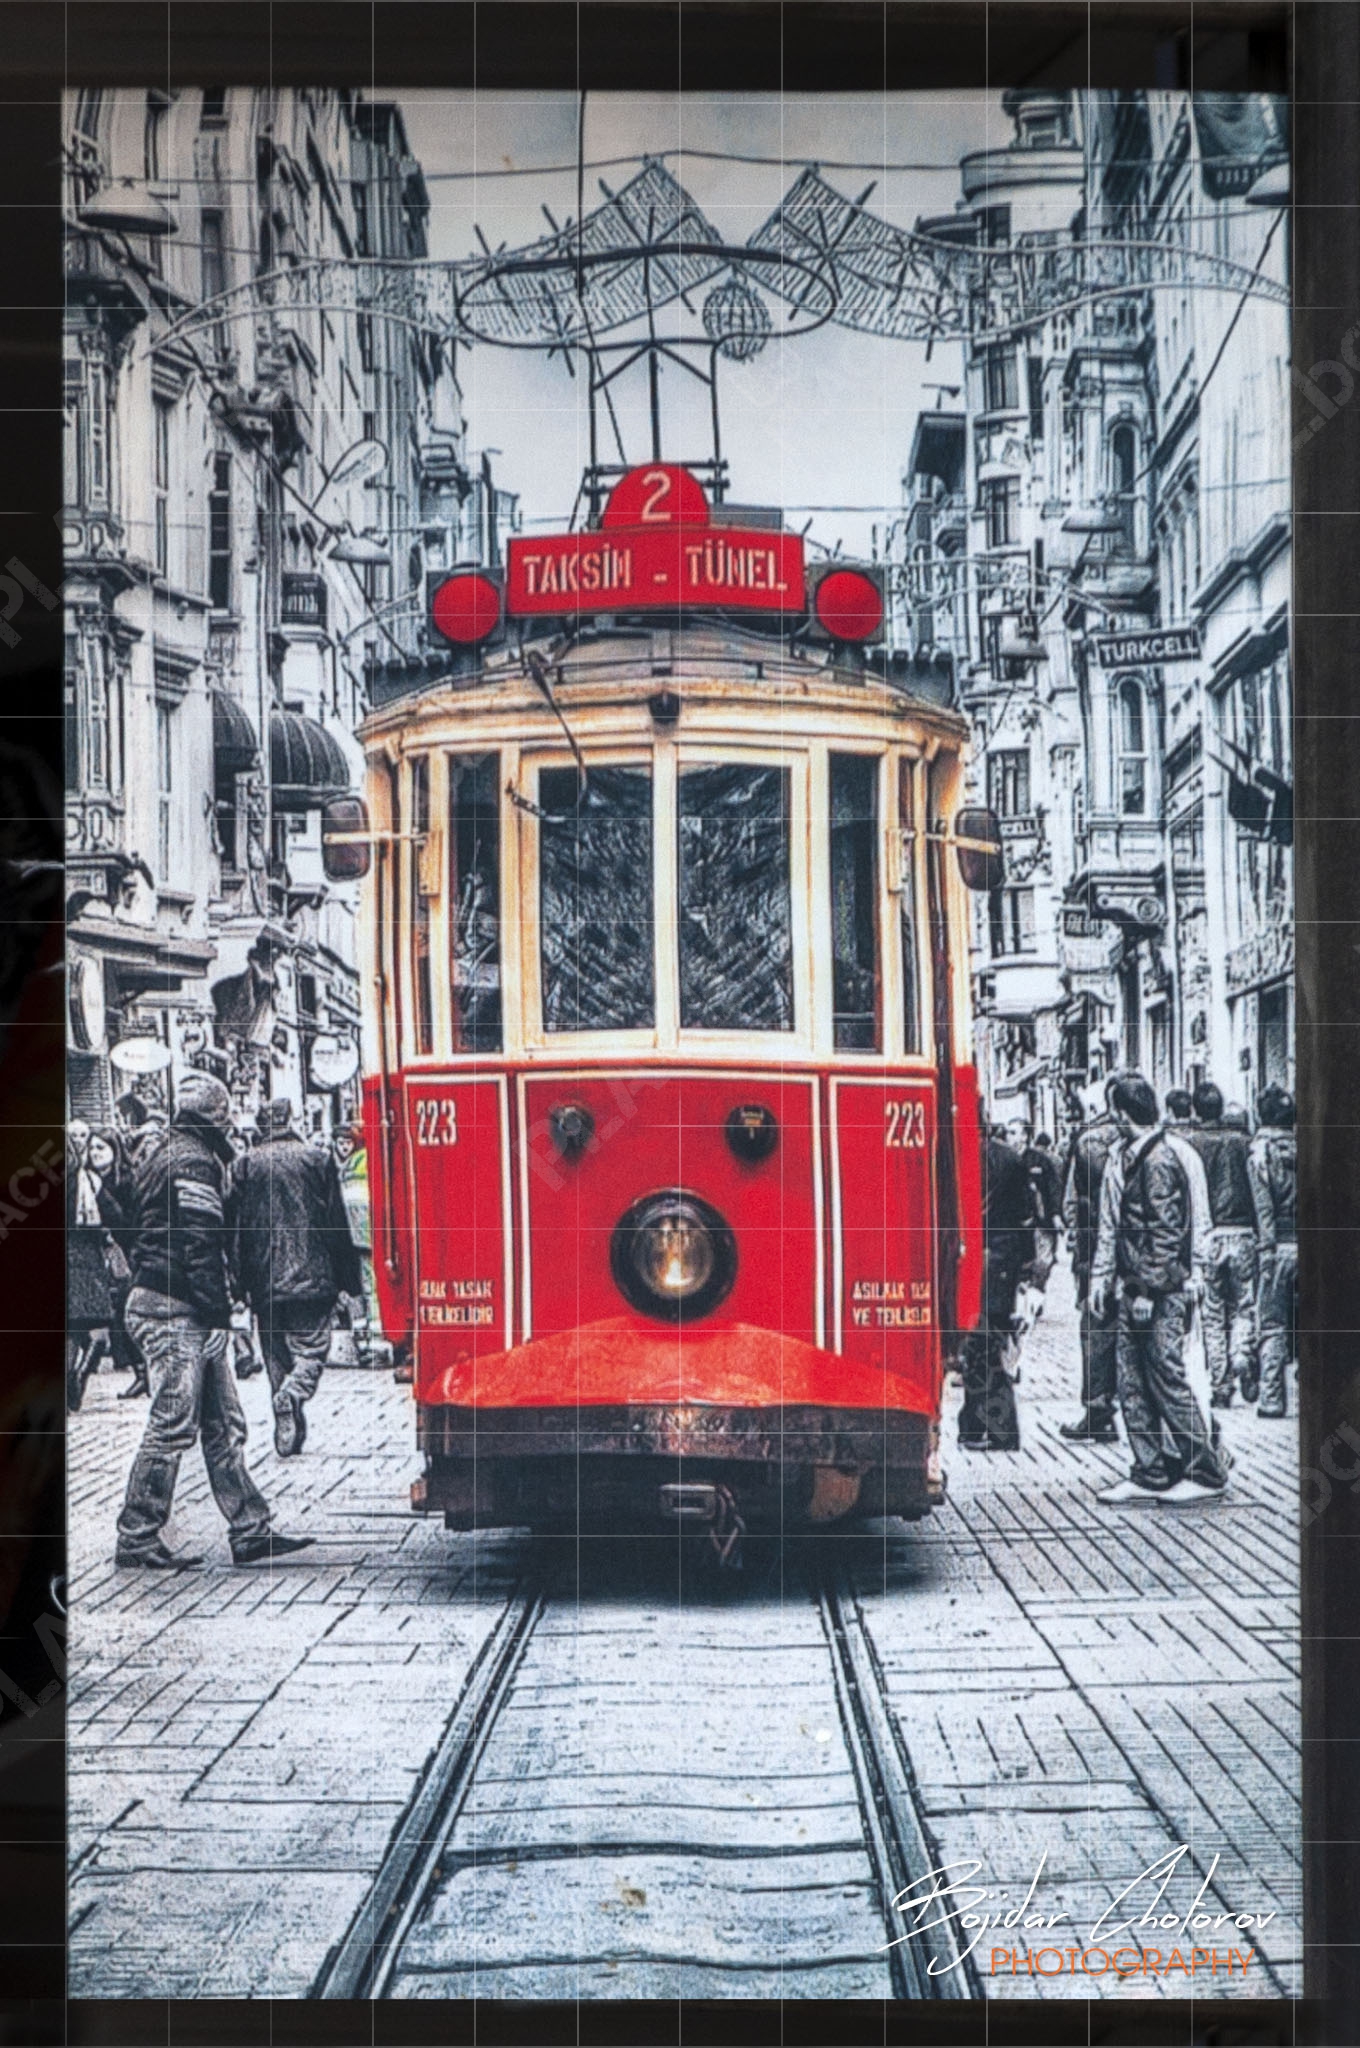 Като един от символите на Истанбул “Nostaljik tramvay” го има на много сувенирни постериDSC9511